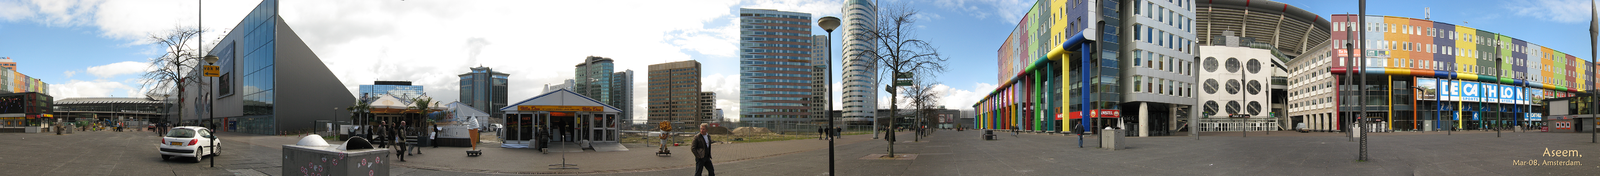 Панорамный вид окрестности «Амстердам Арены» 18 марта 2008 года.